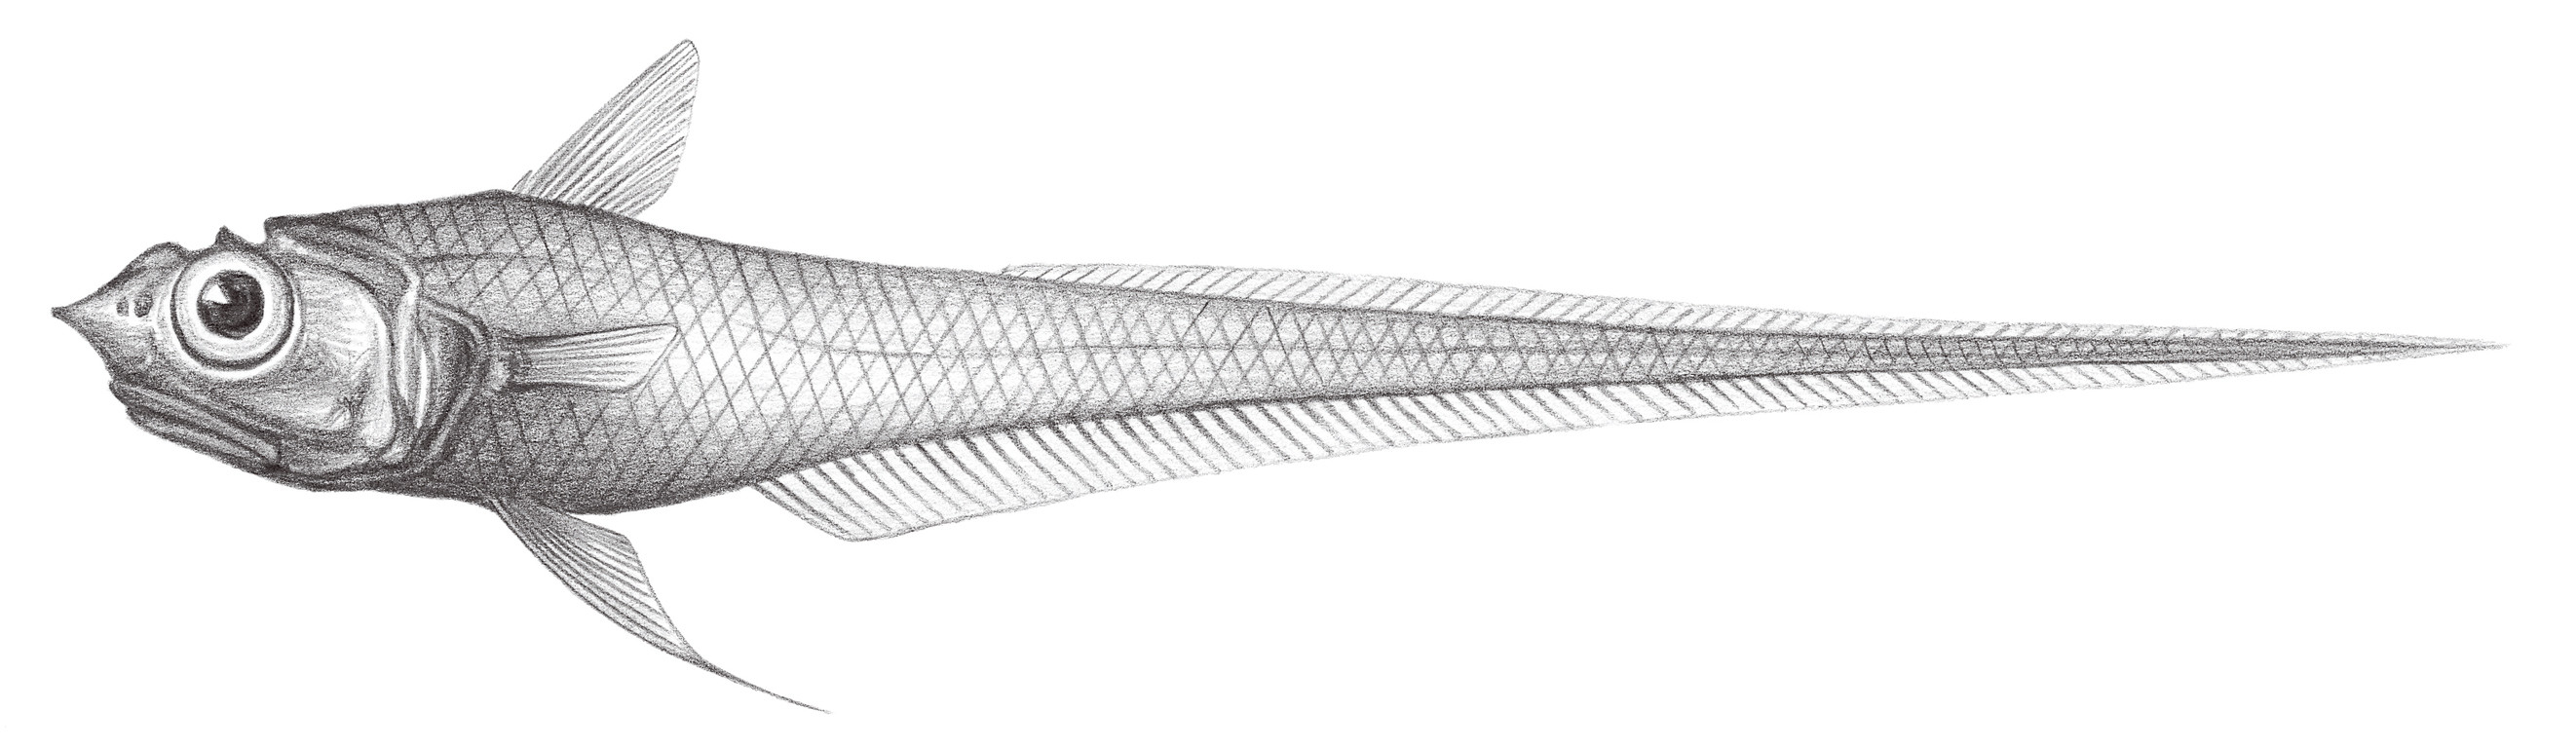 579.	刺吻膜首鱈 Hymenocephalus lethonemus Jordan & Gilbert, 1904